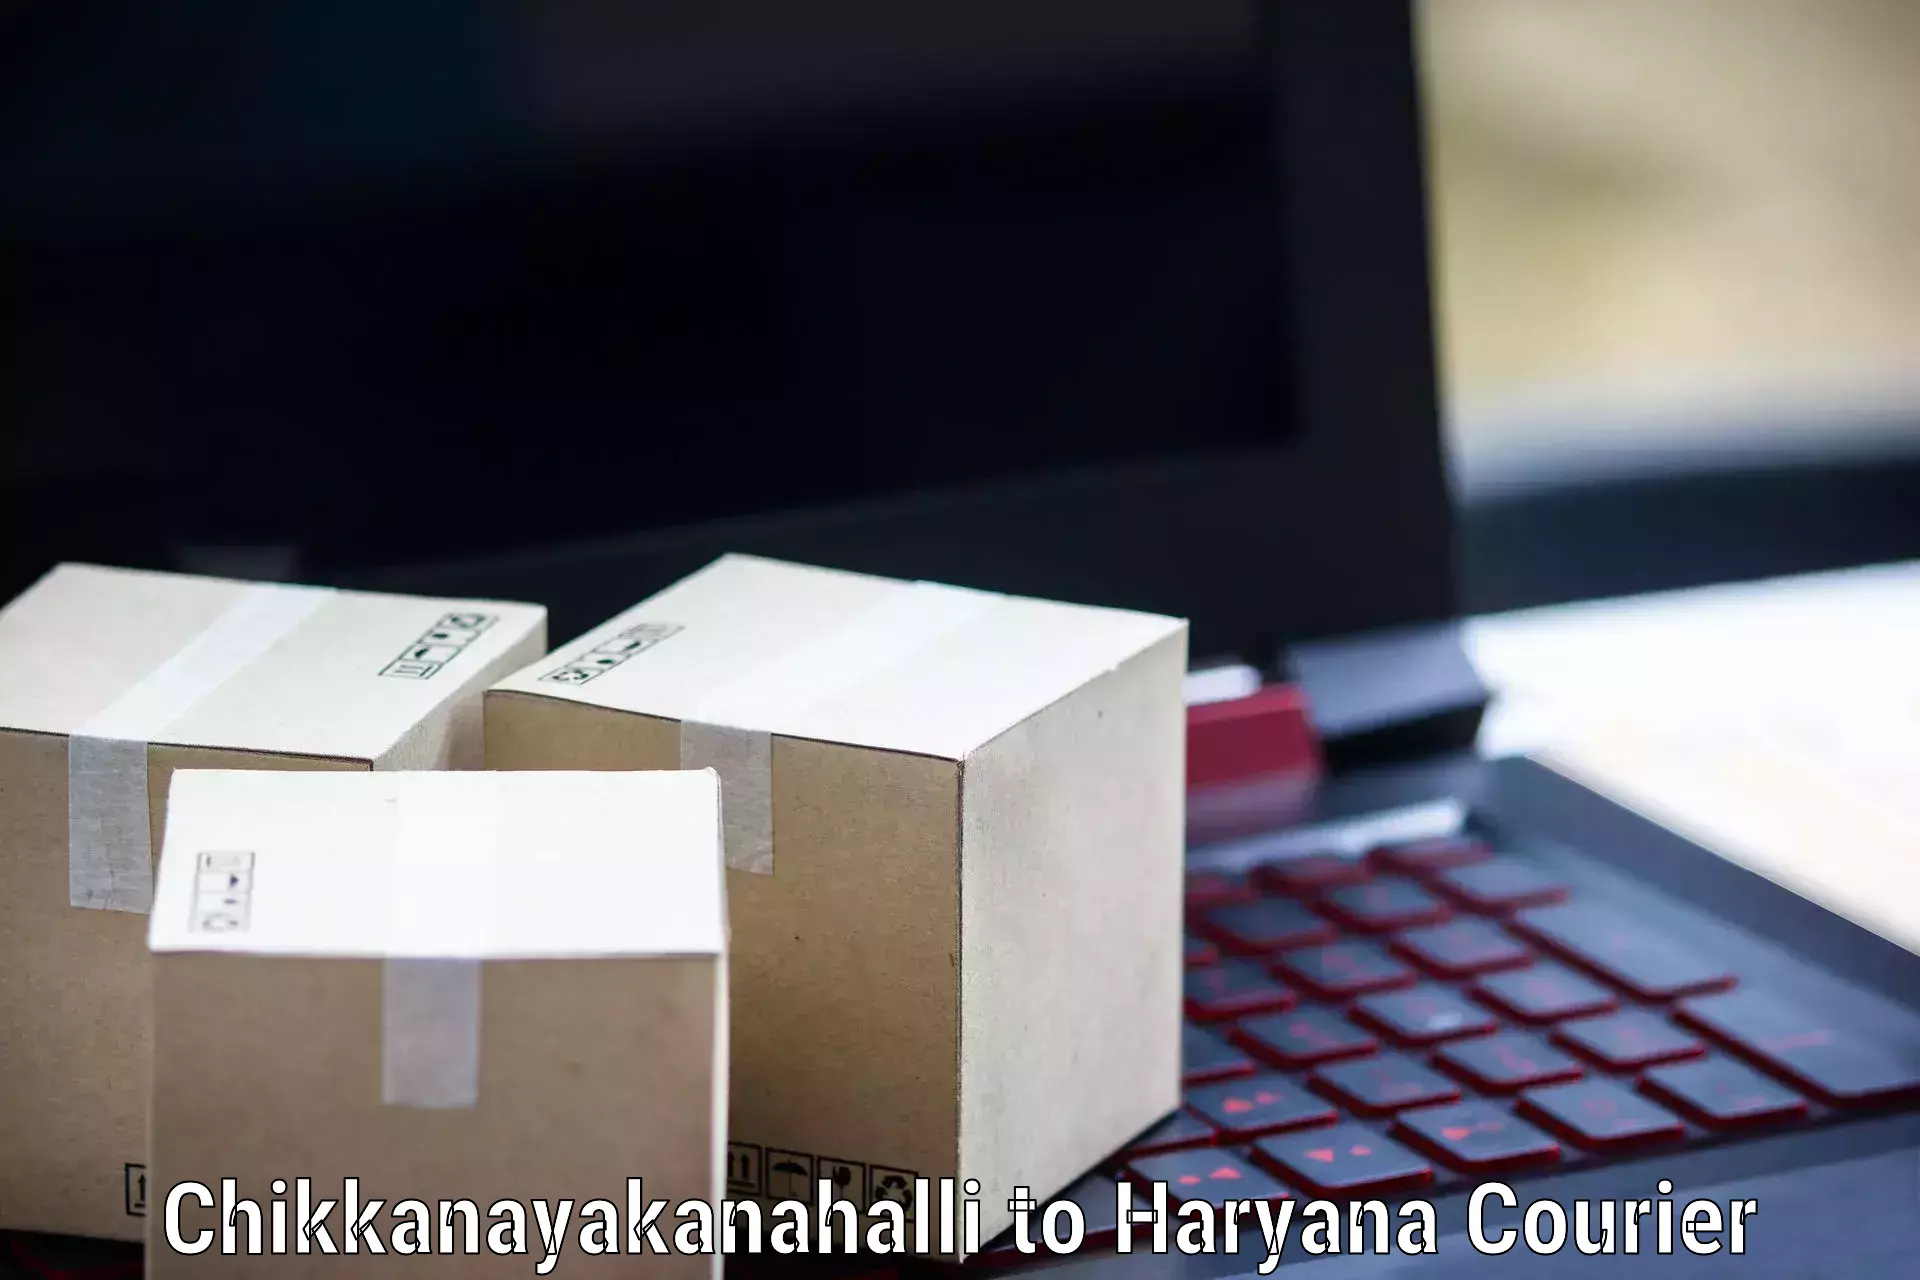 Speedy delivery service Chikkanayakanahalli to Gohana